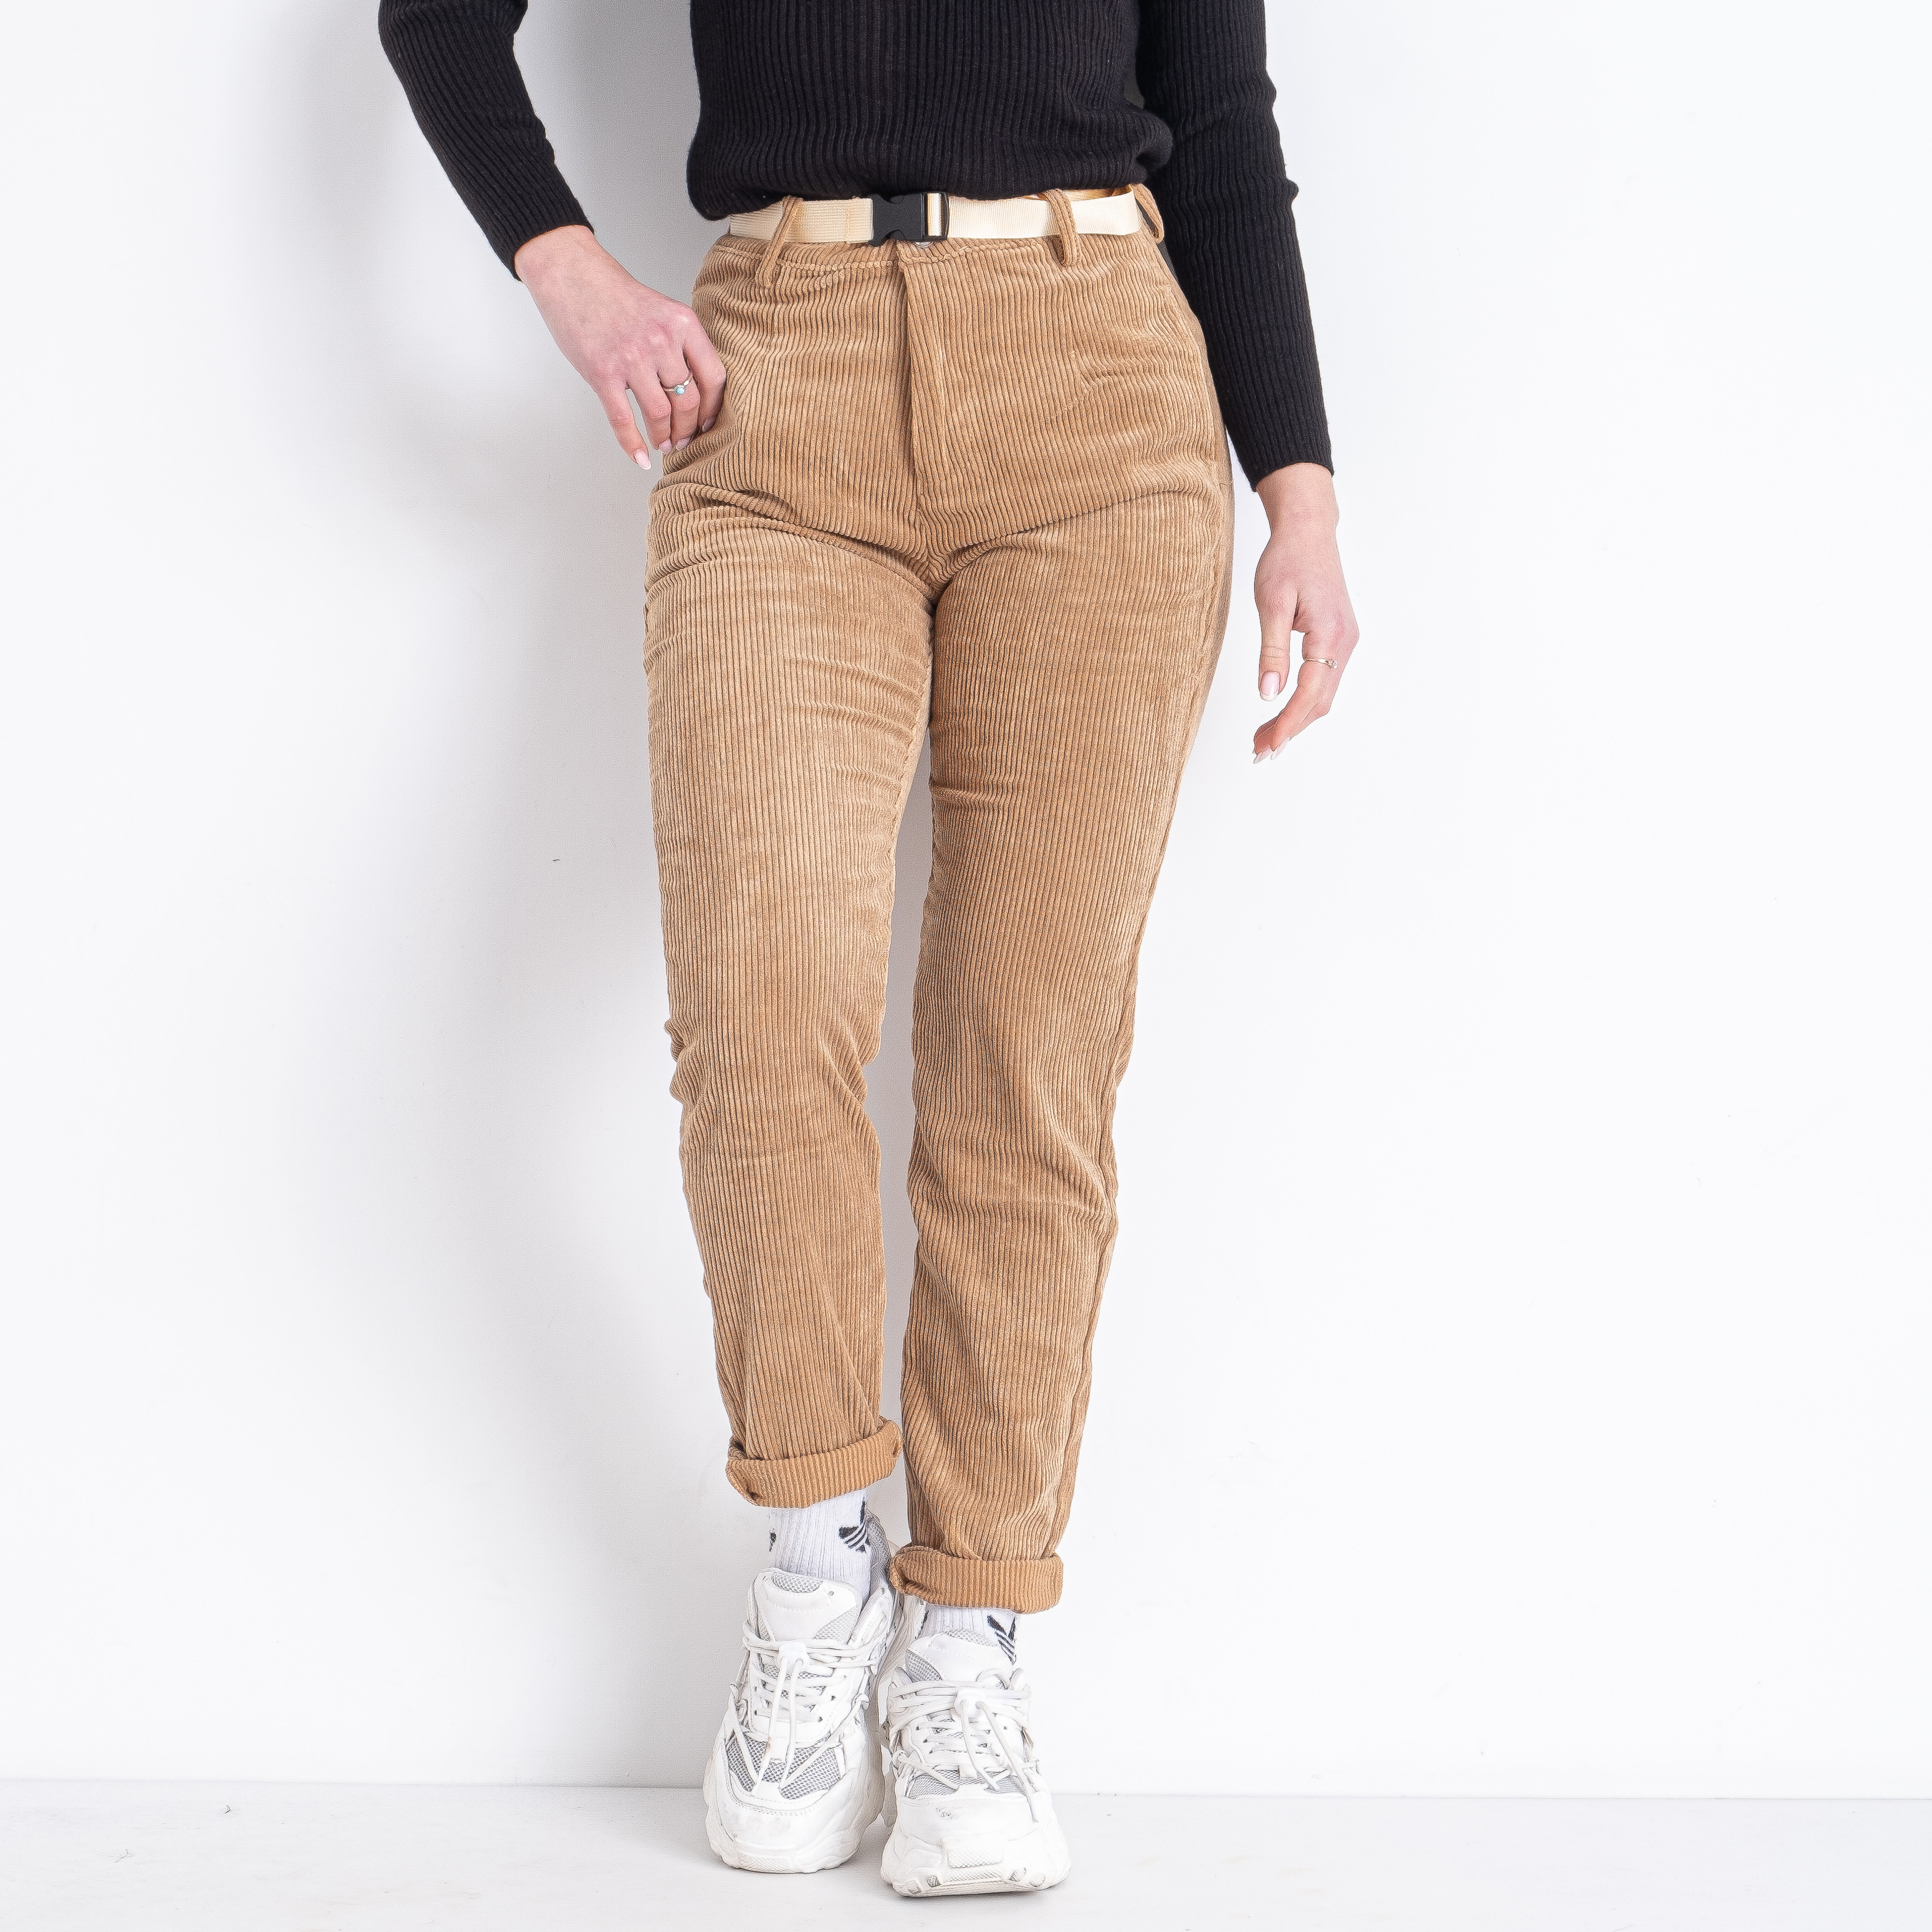 1499 коричневые женские брюки (LADY N, микровельветовые, 6 ед. размеры норма: 25. 26. 27. 28. 29. 30)